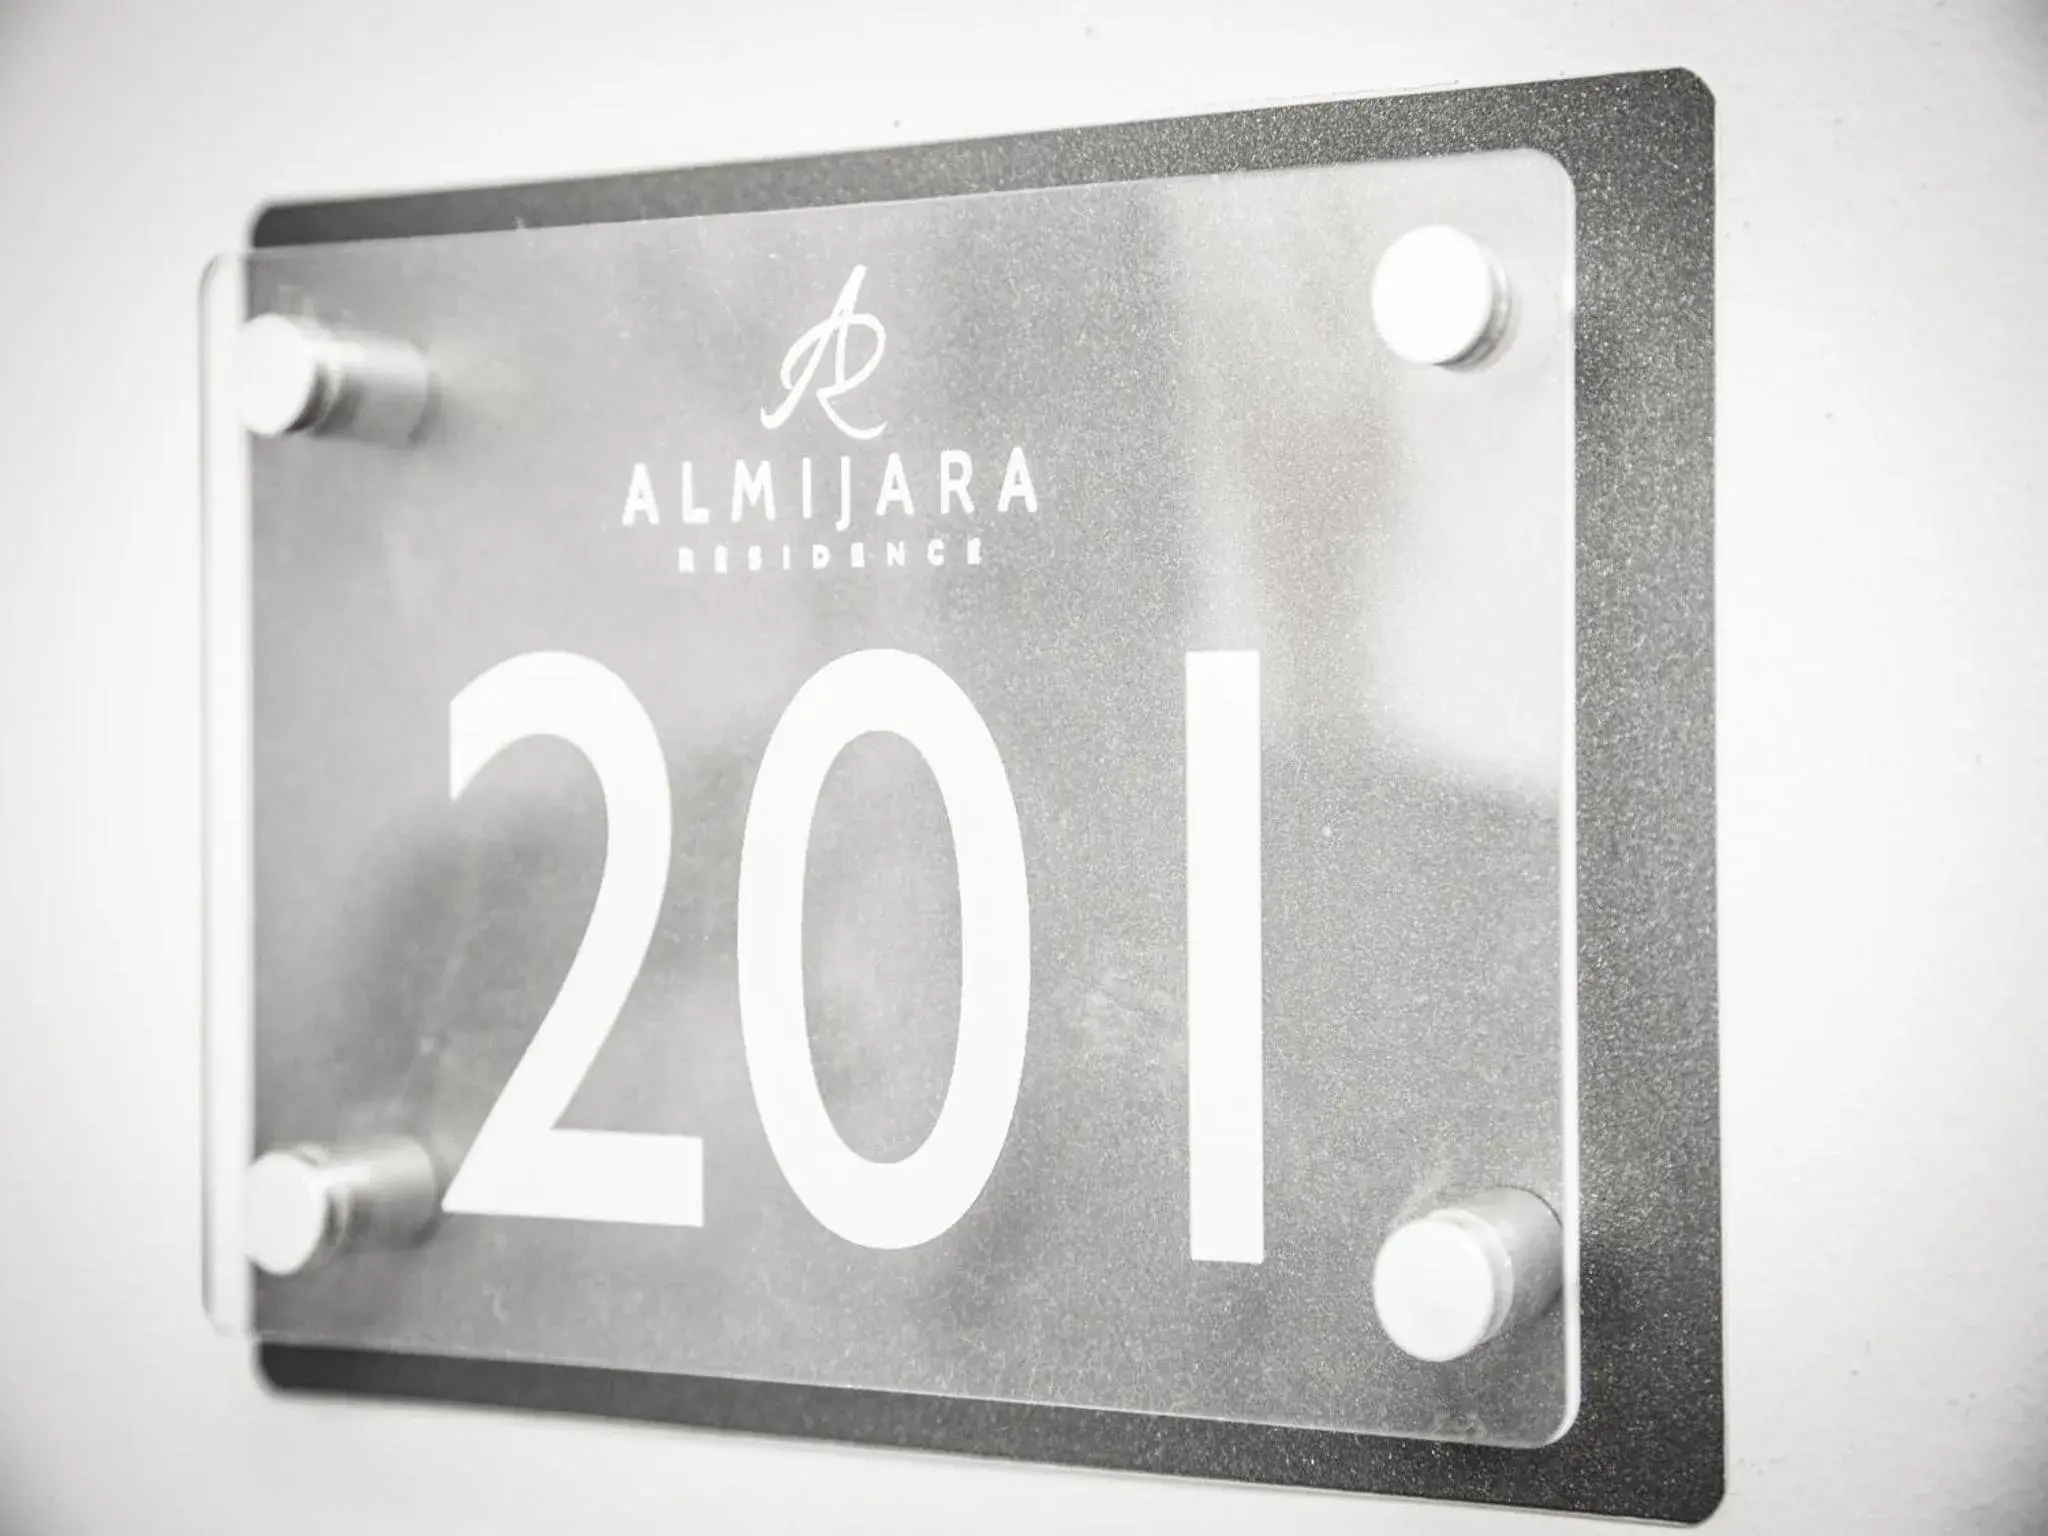 Logo/Certificate/Sign/Award in Almijara Residence